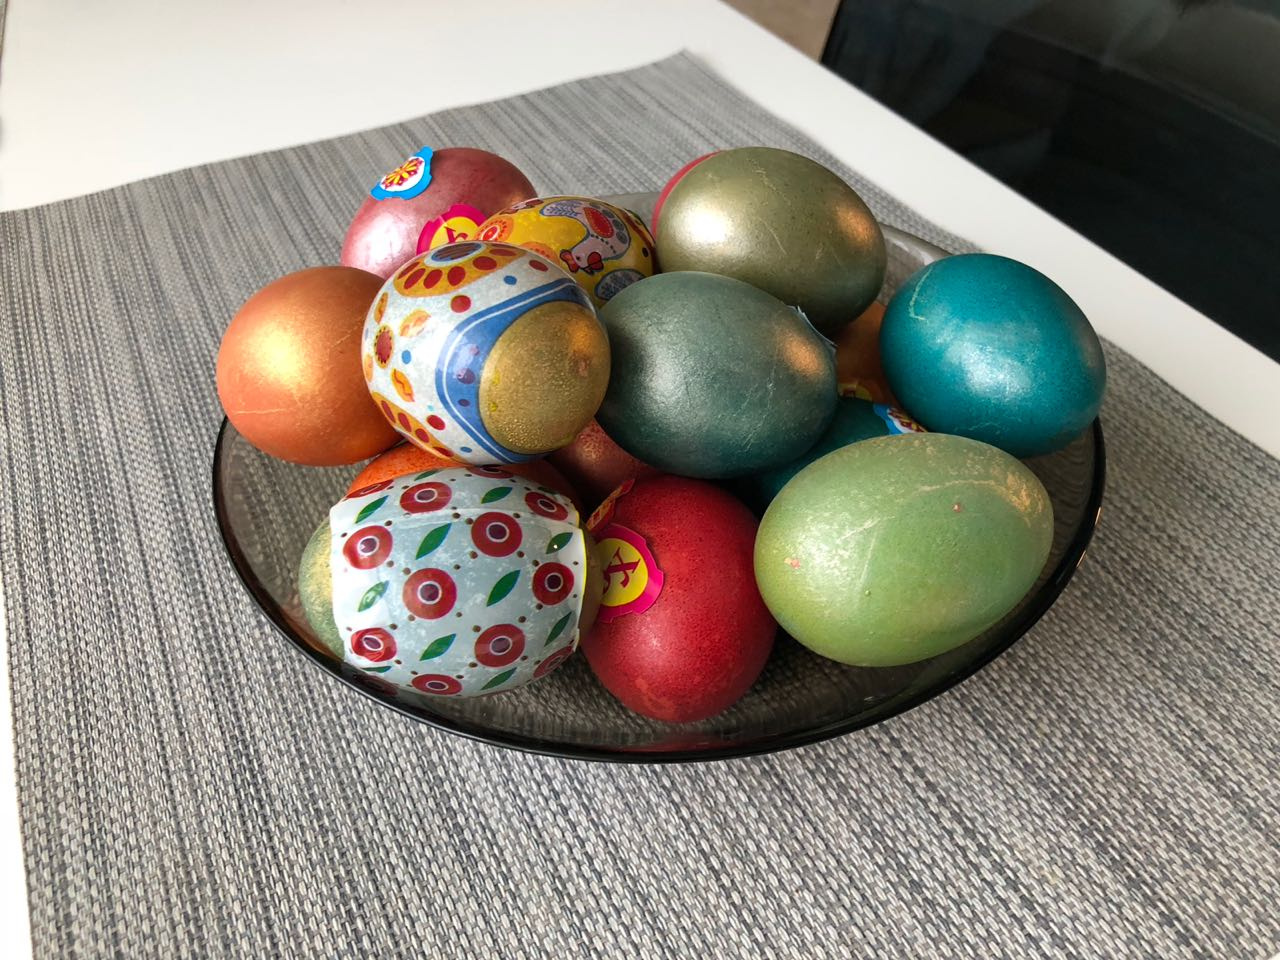 ...Яйца красили с детьми — им было весело и занятно!» — рассказывают читататели